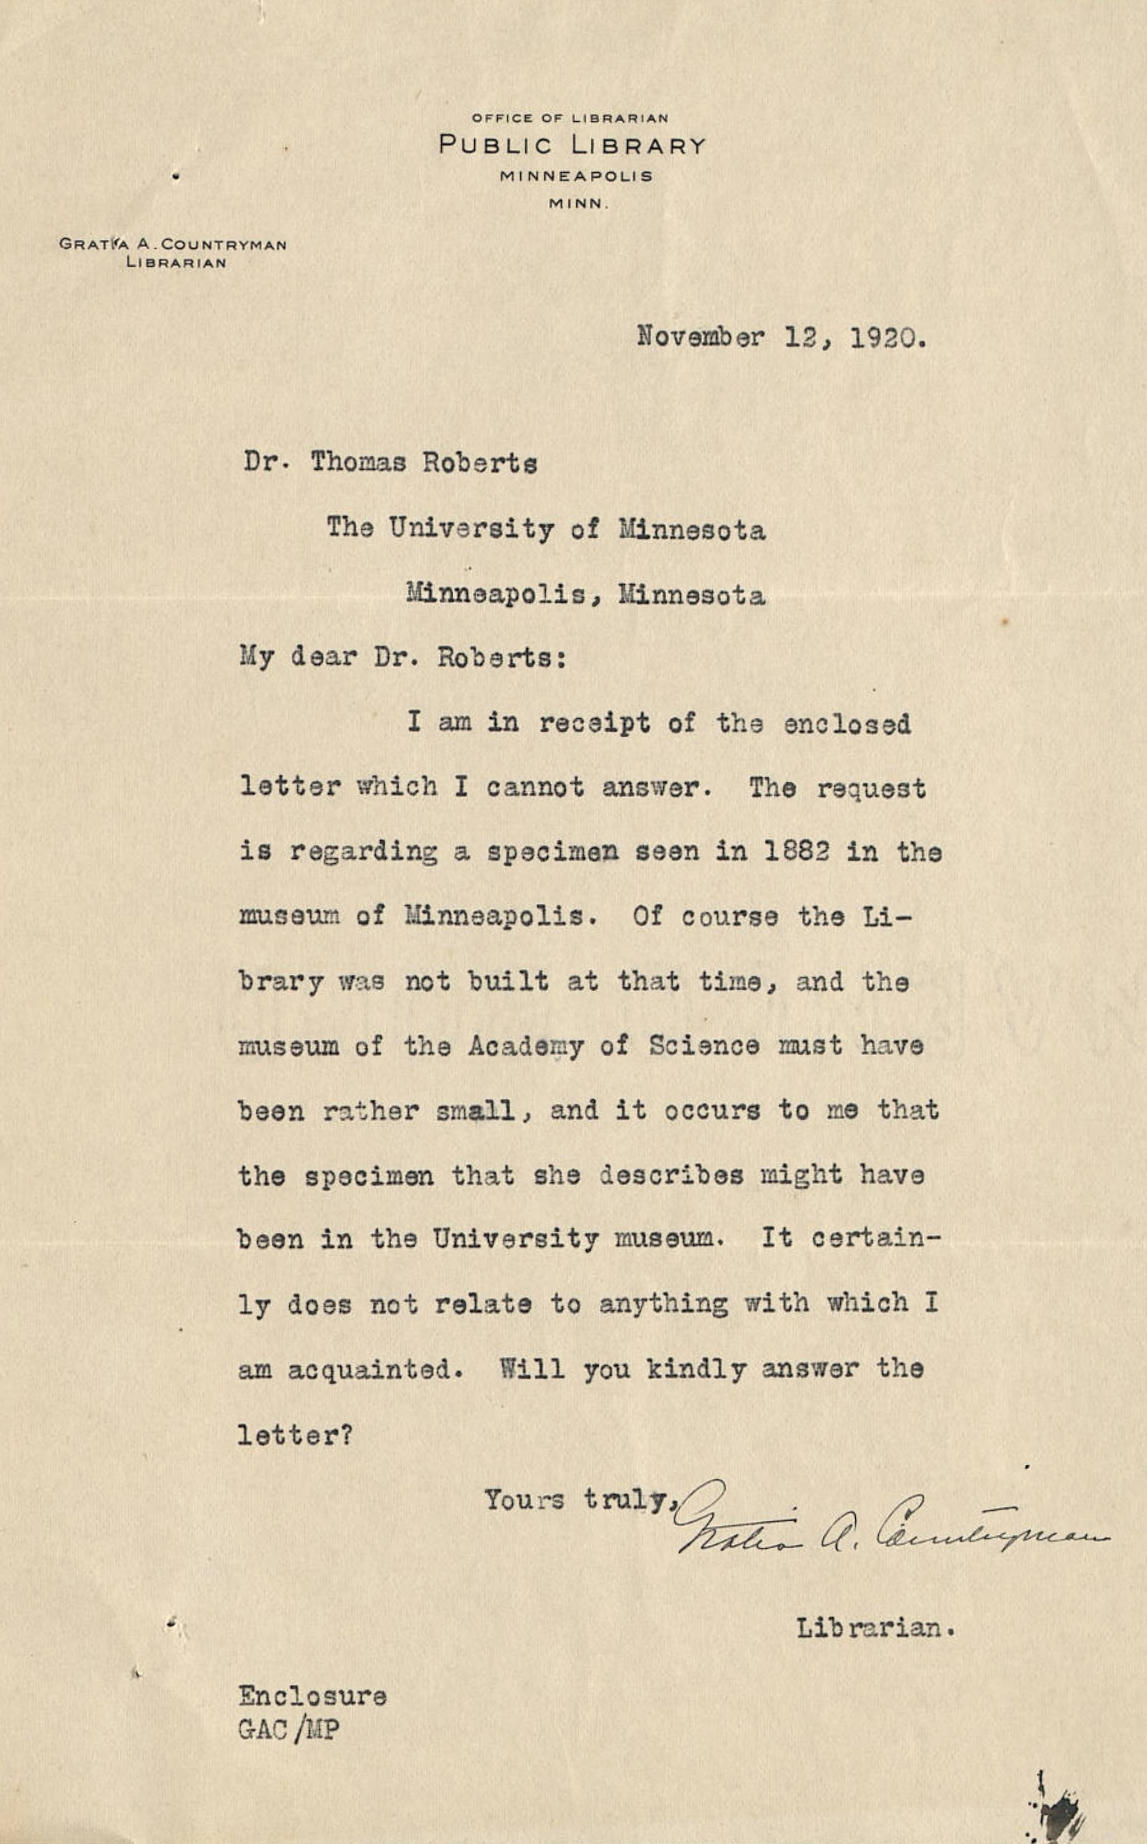 Countryman note to Roberts November 12, 1920